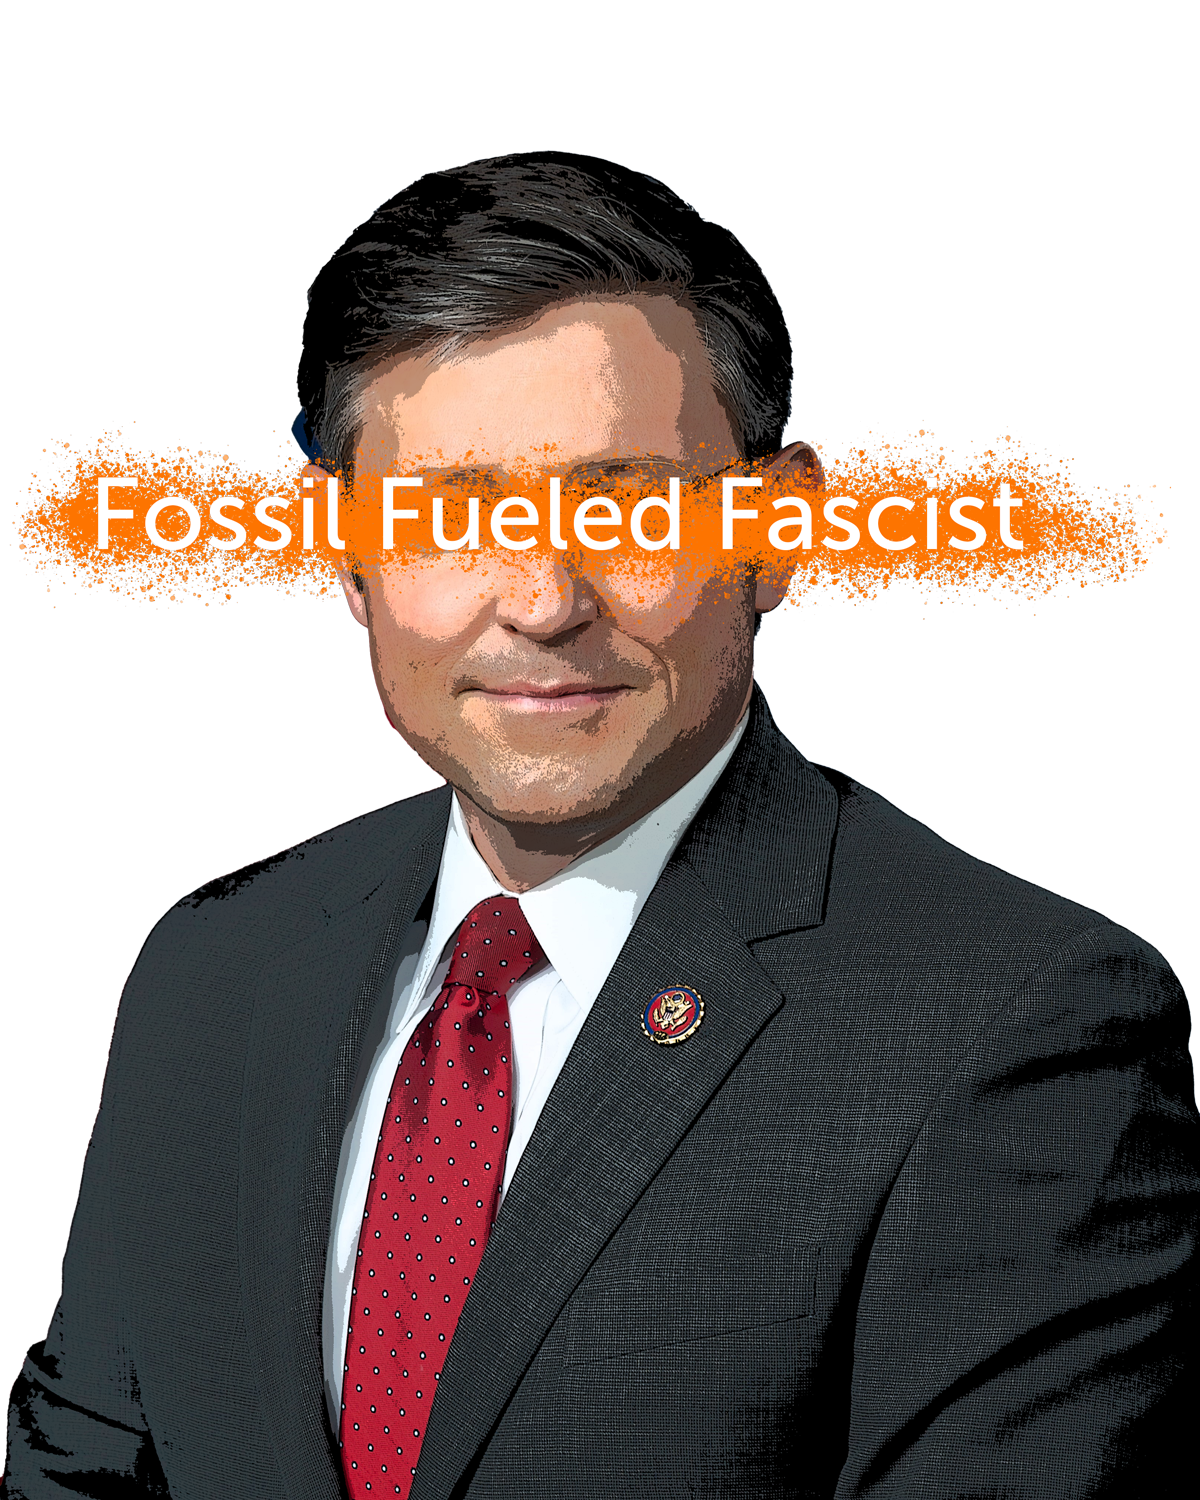 Speaker Johnson is a fossil fueled fascist